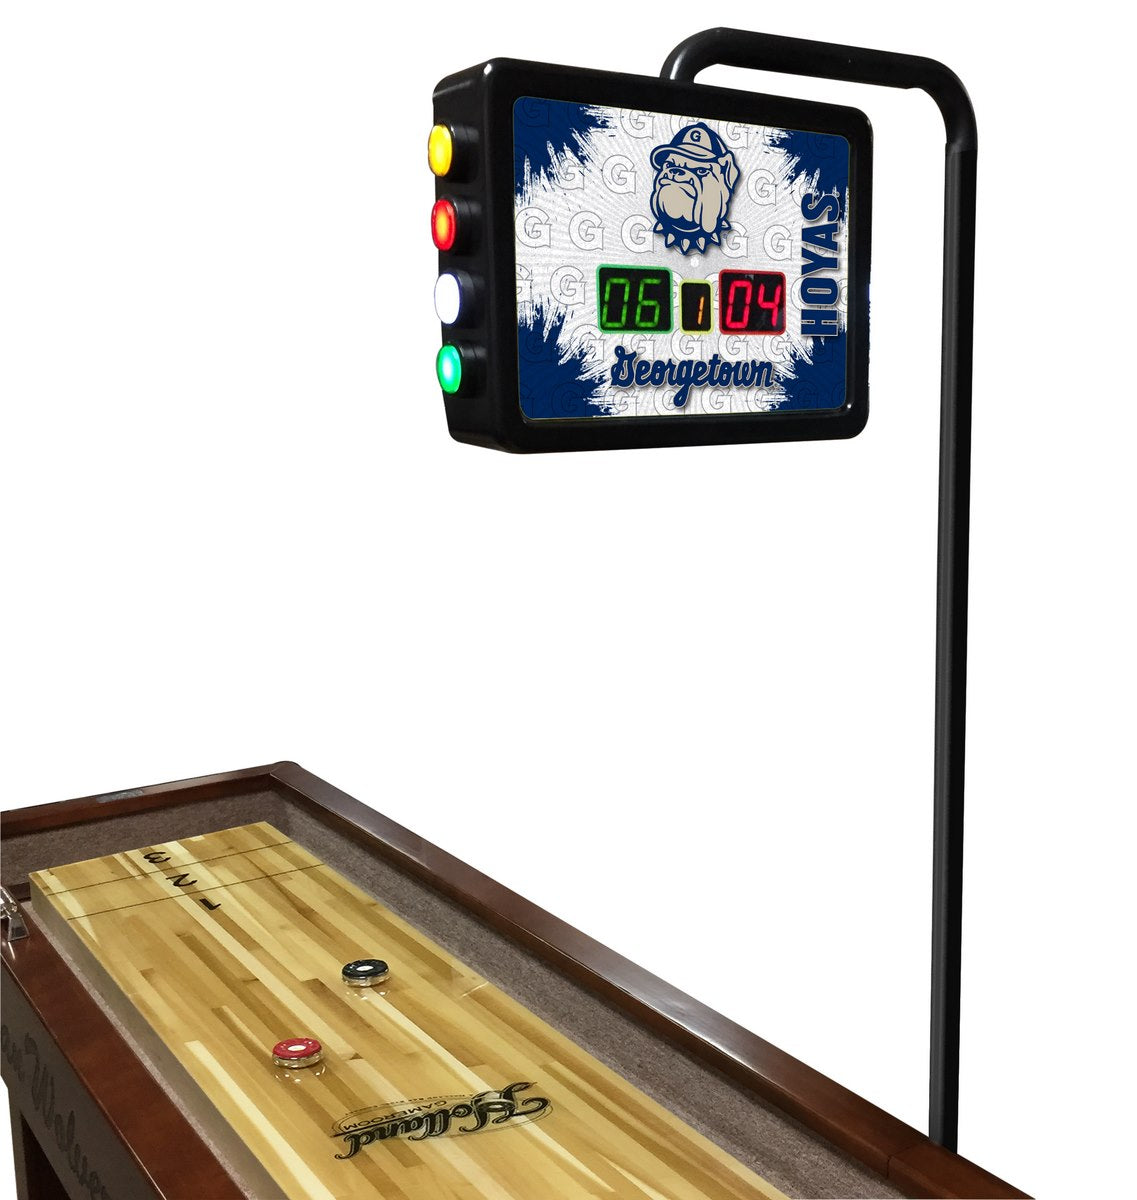 Georgetown Hoyas Laser Engraved Shuffleboard Table